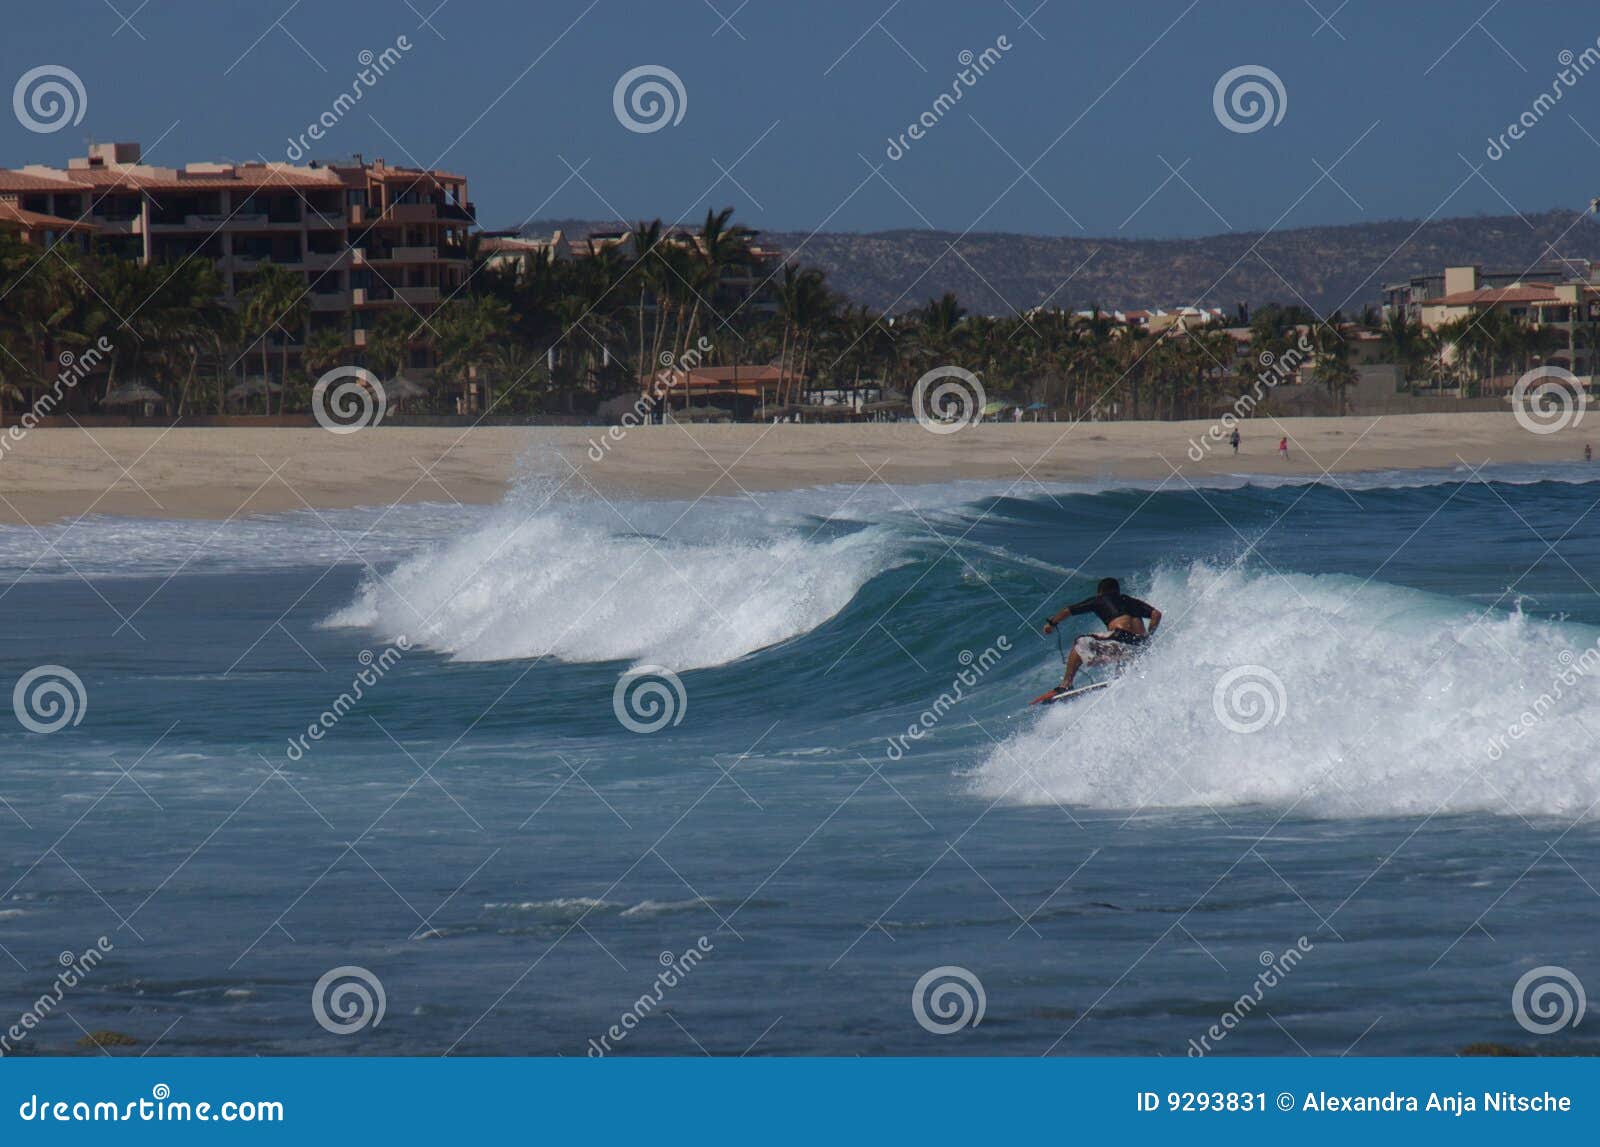 surfing costa azul los cabos mexico